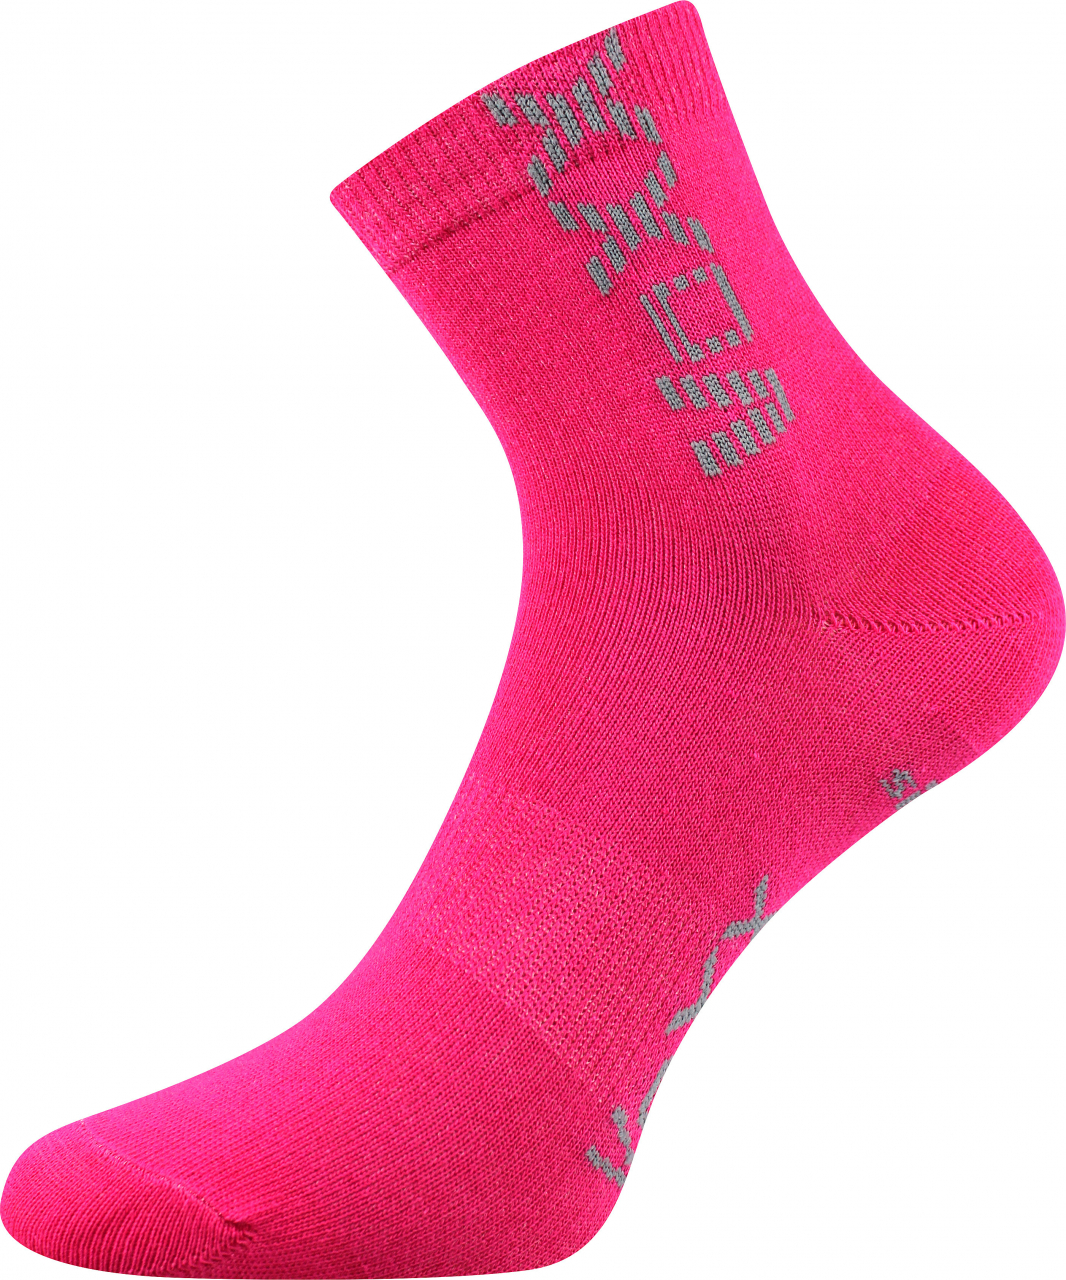 Ponožky dětské sportovní Voxx Adventurik - růžové, 20-24